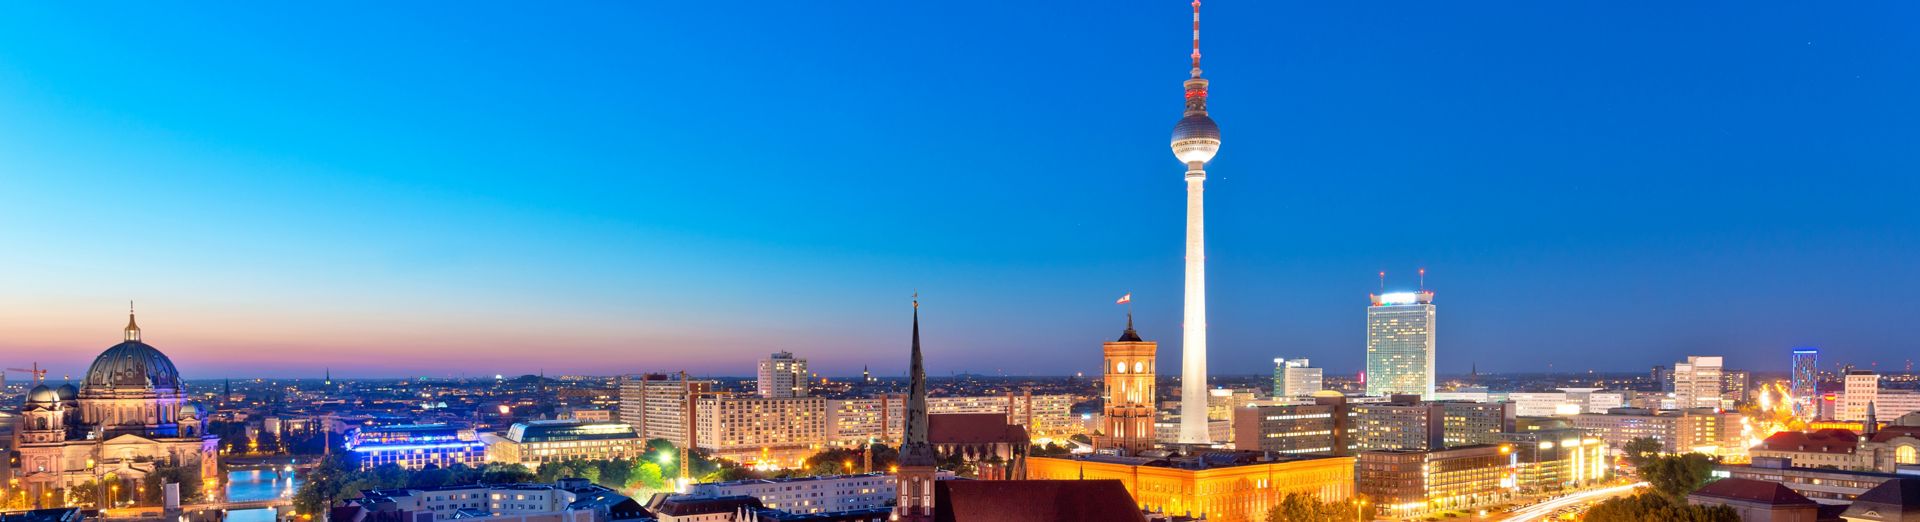 Berliner Skyline mit dem Fernsehturm im Morgengrauen